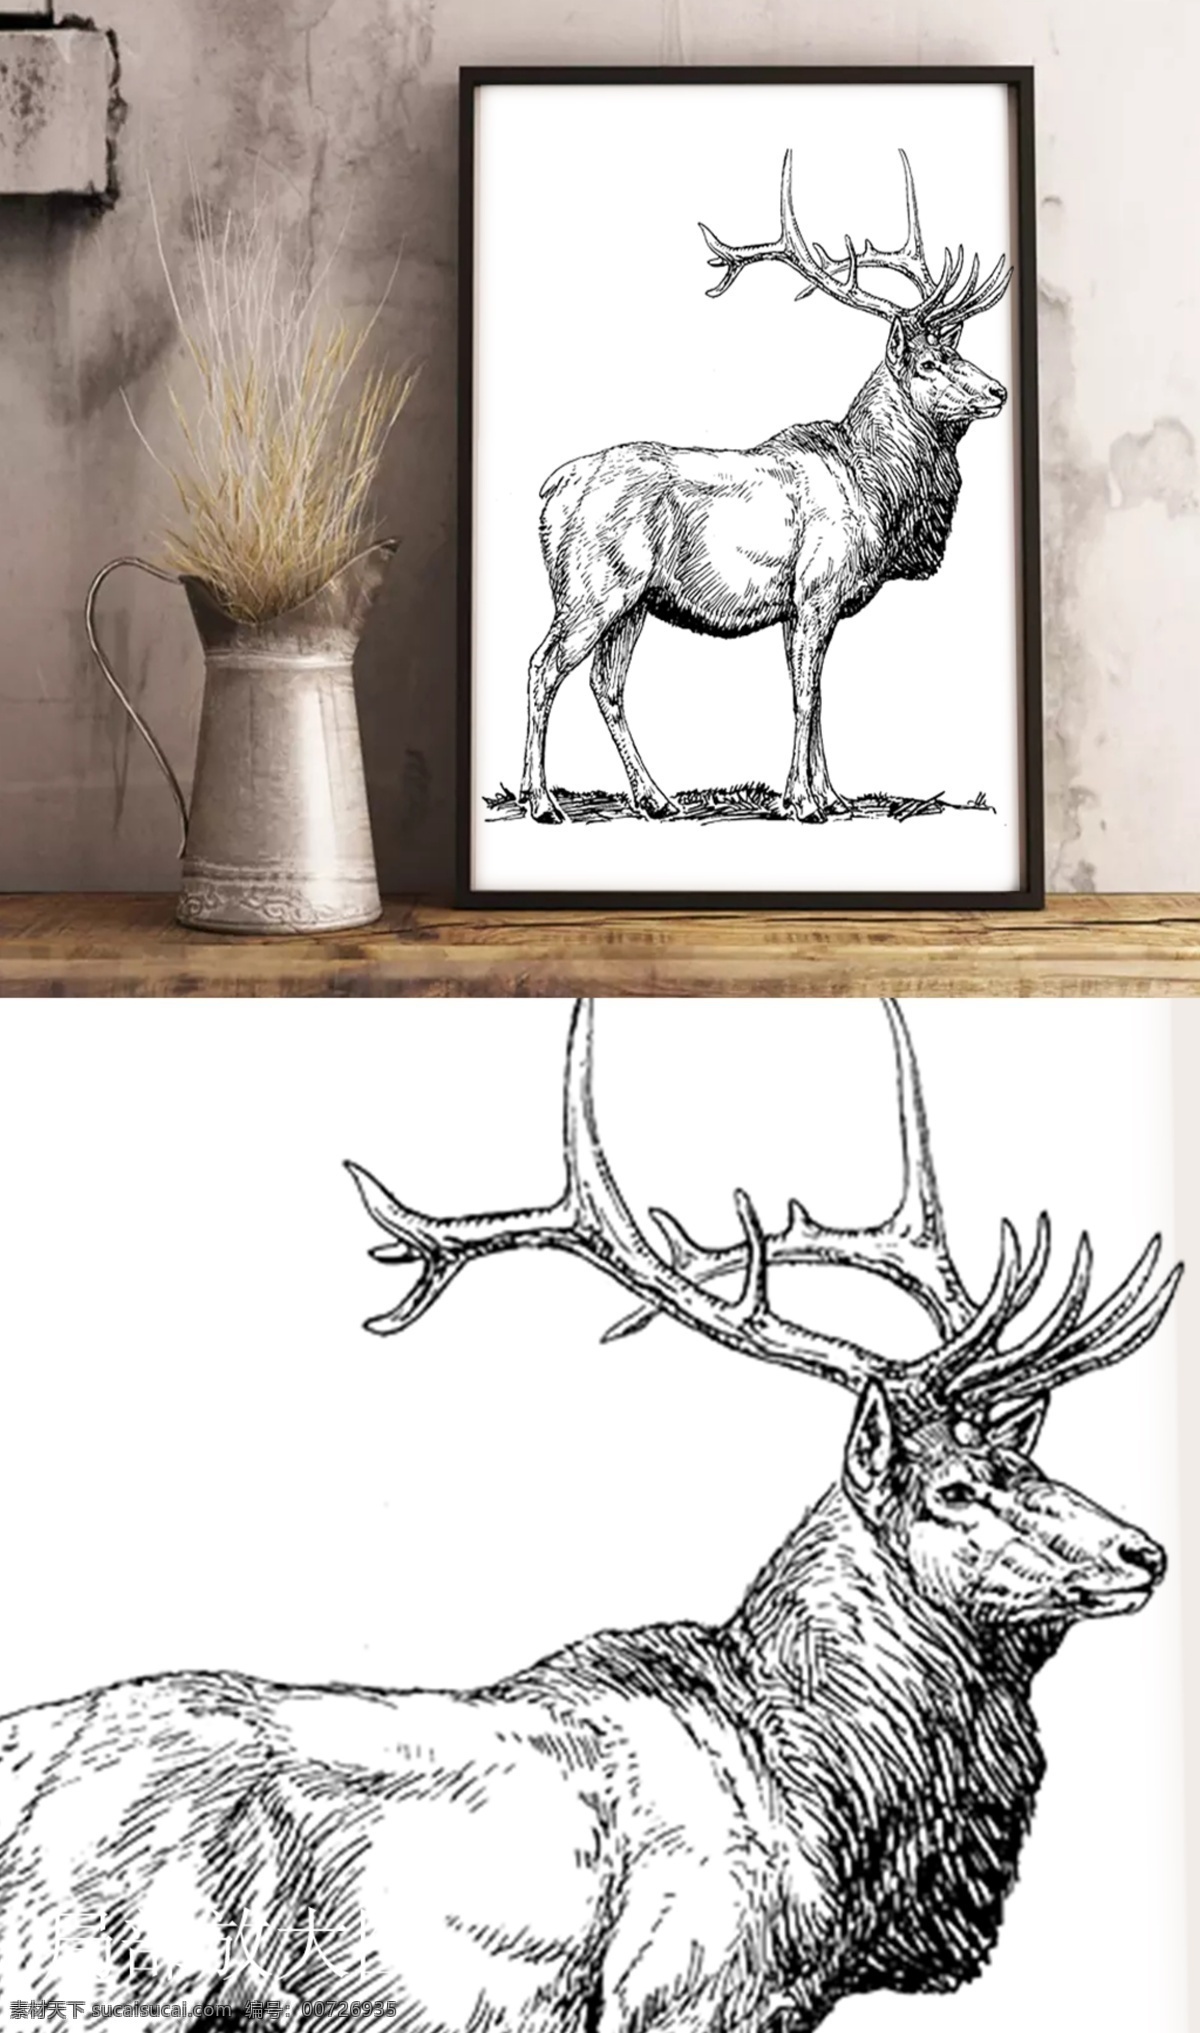 黑白 线描 麋鹿 装饰画 挂画 黑白画 圣诞装饰画 素描 小鹿